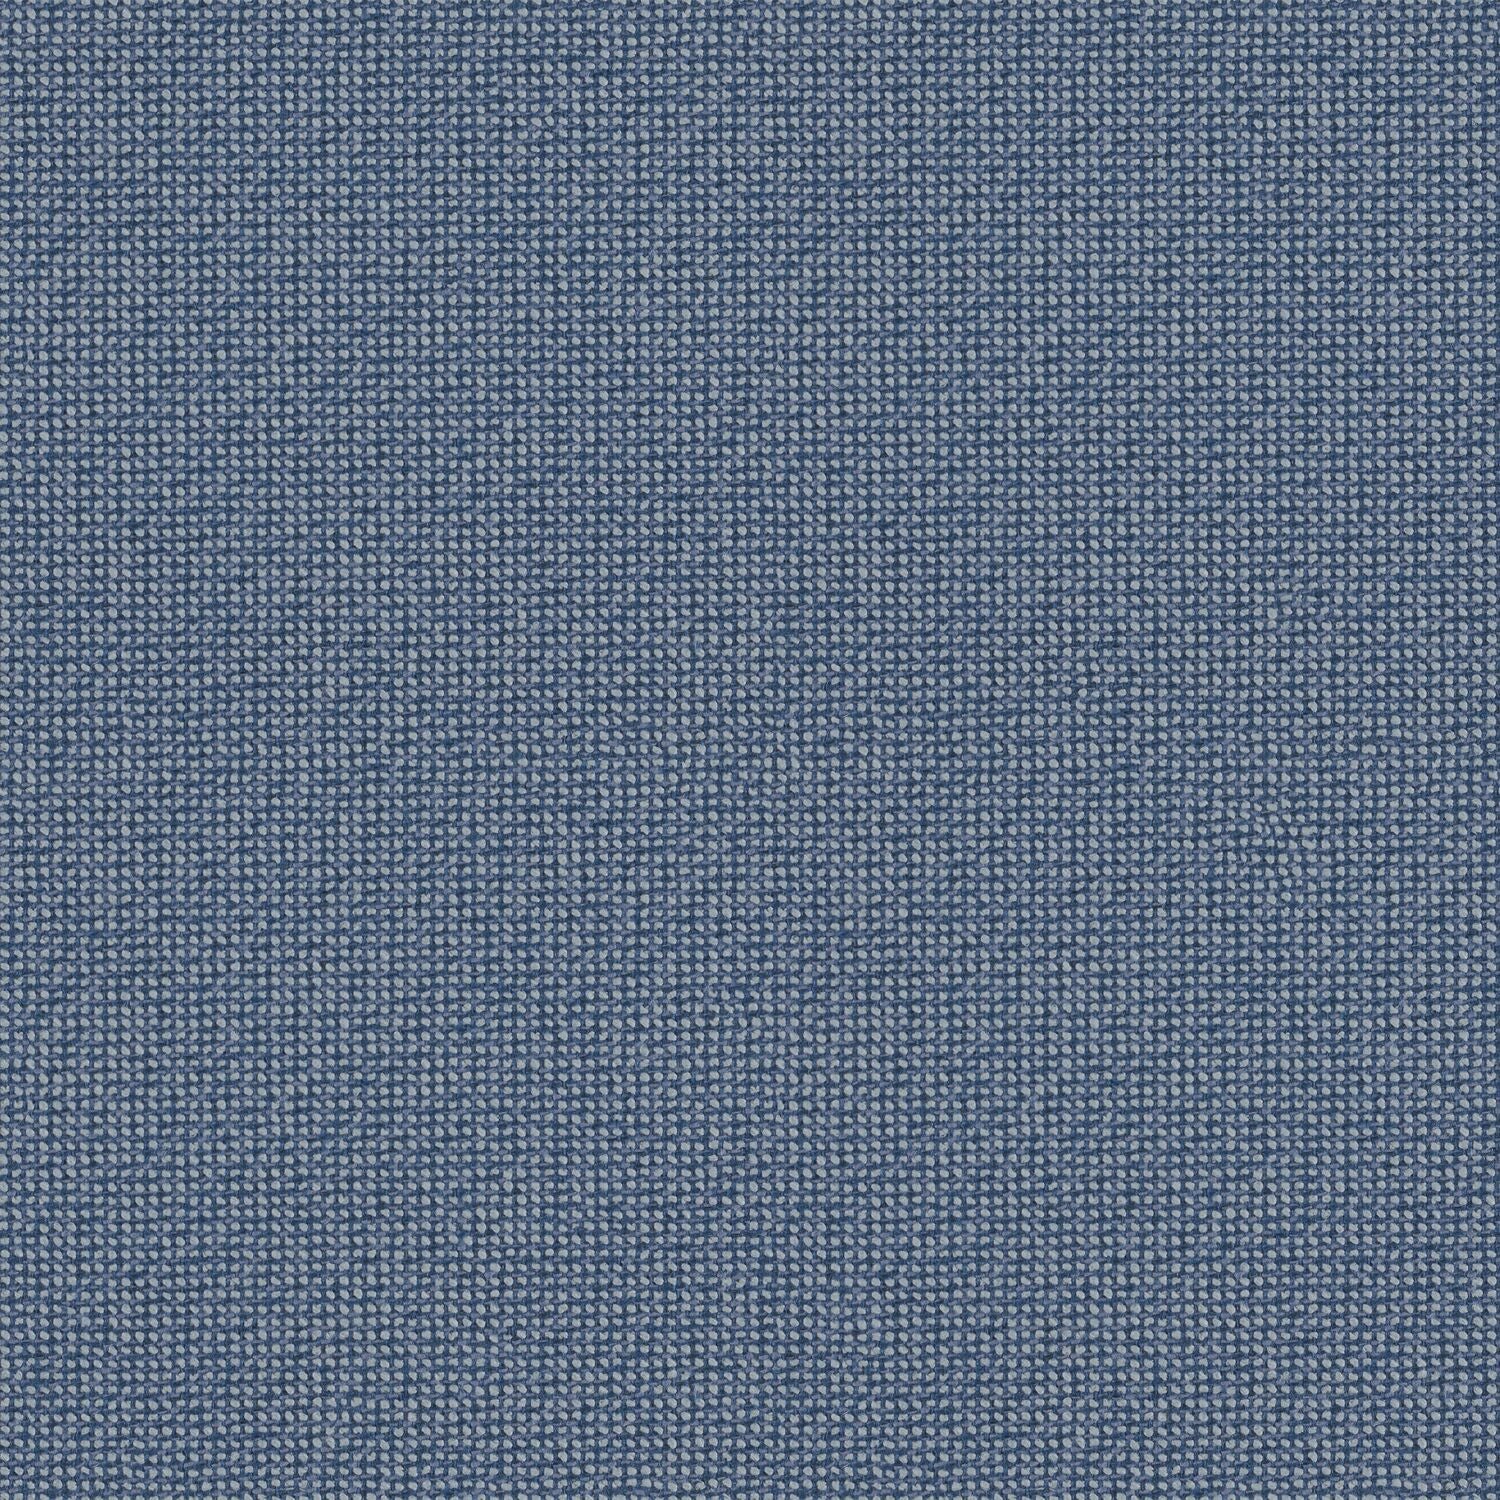 Twisted Tweed - Rain Chain - 4096 - 15